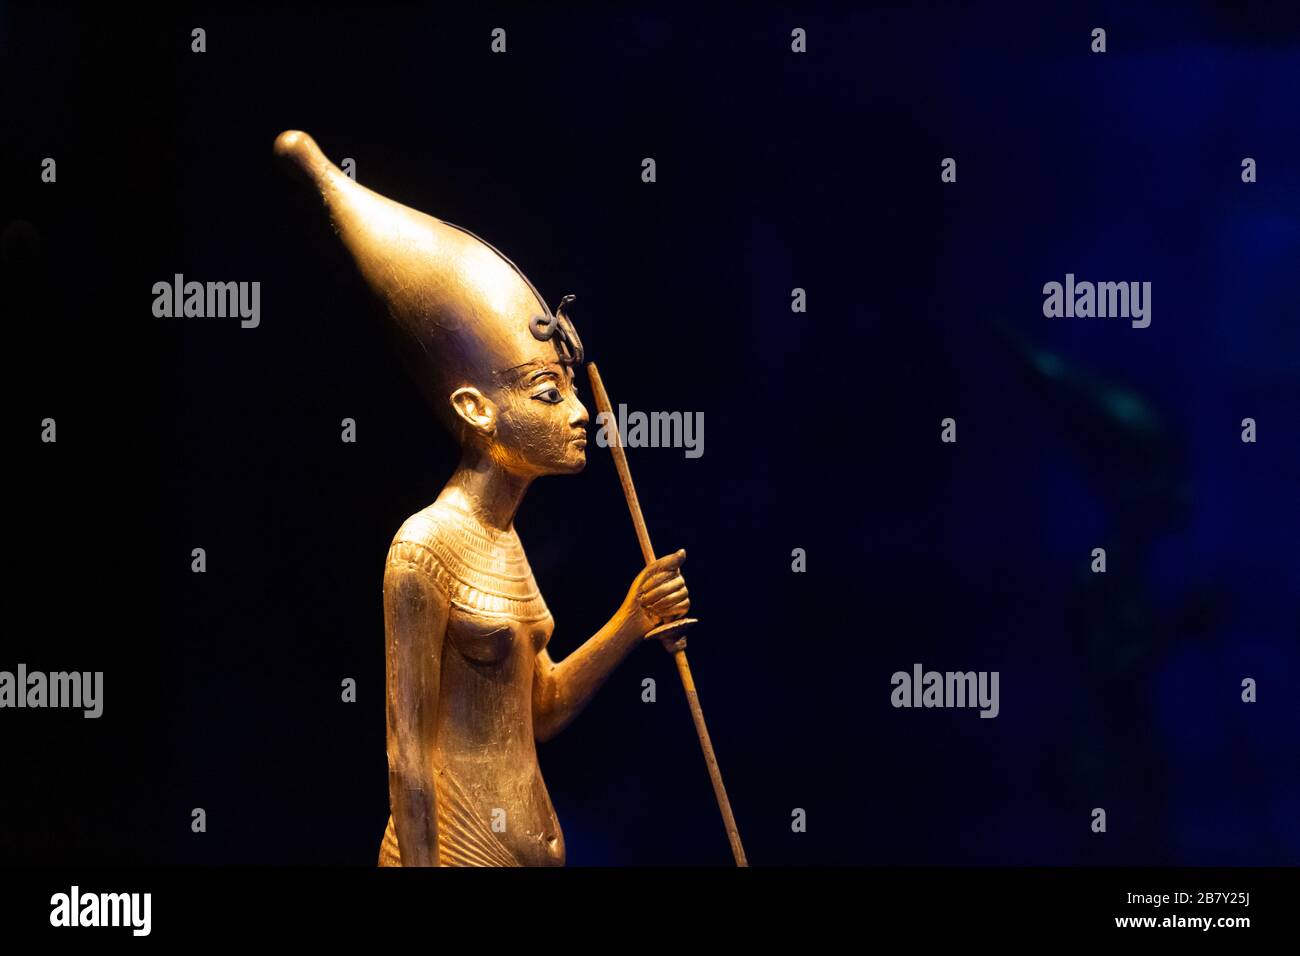 Statua di Tutankhamun; primo piano di una statua in legno dorato del re; tomba di Tutankhamuns, antico tesoro egiziano, antico Egitto Foto Stock